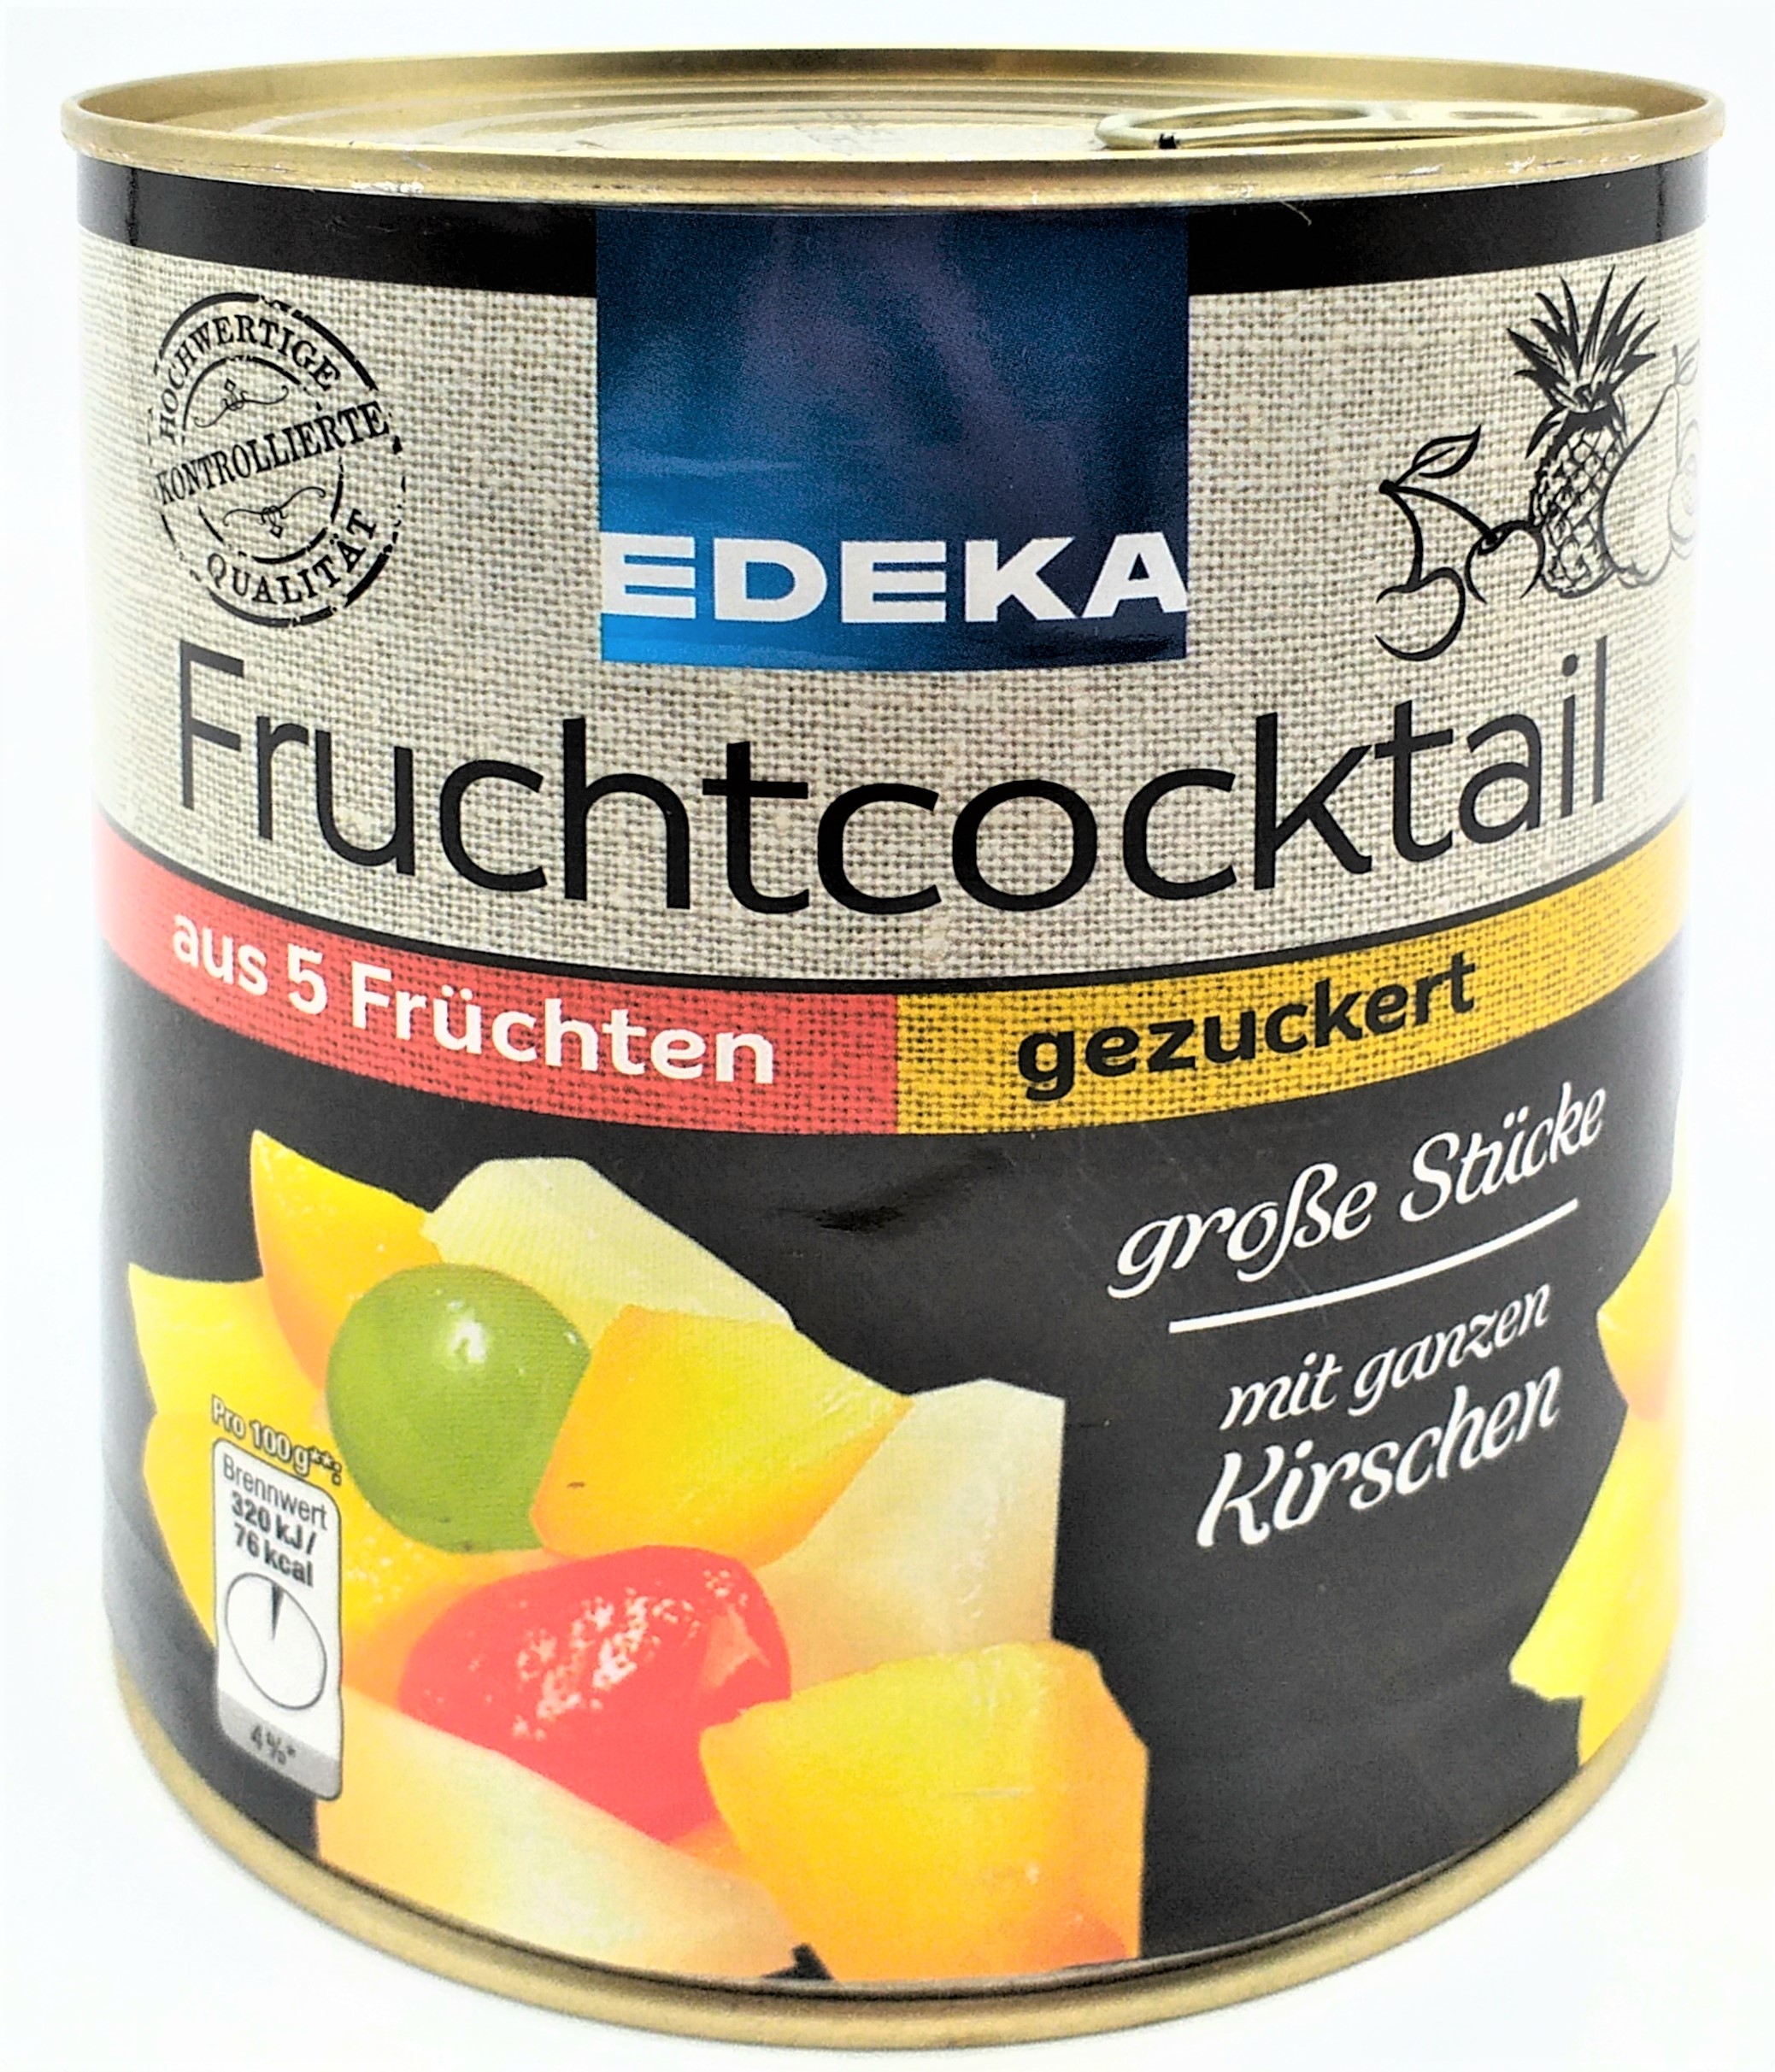 EDEKA 5-Fruchtcocktail gezuckert 140g